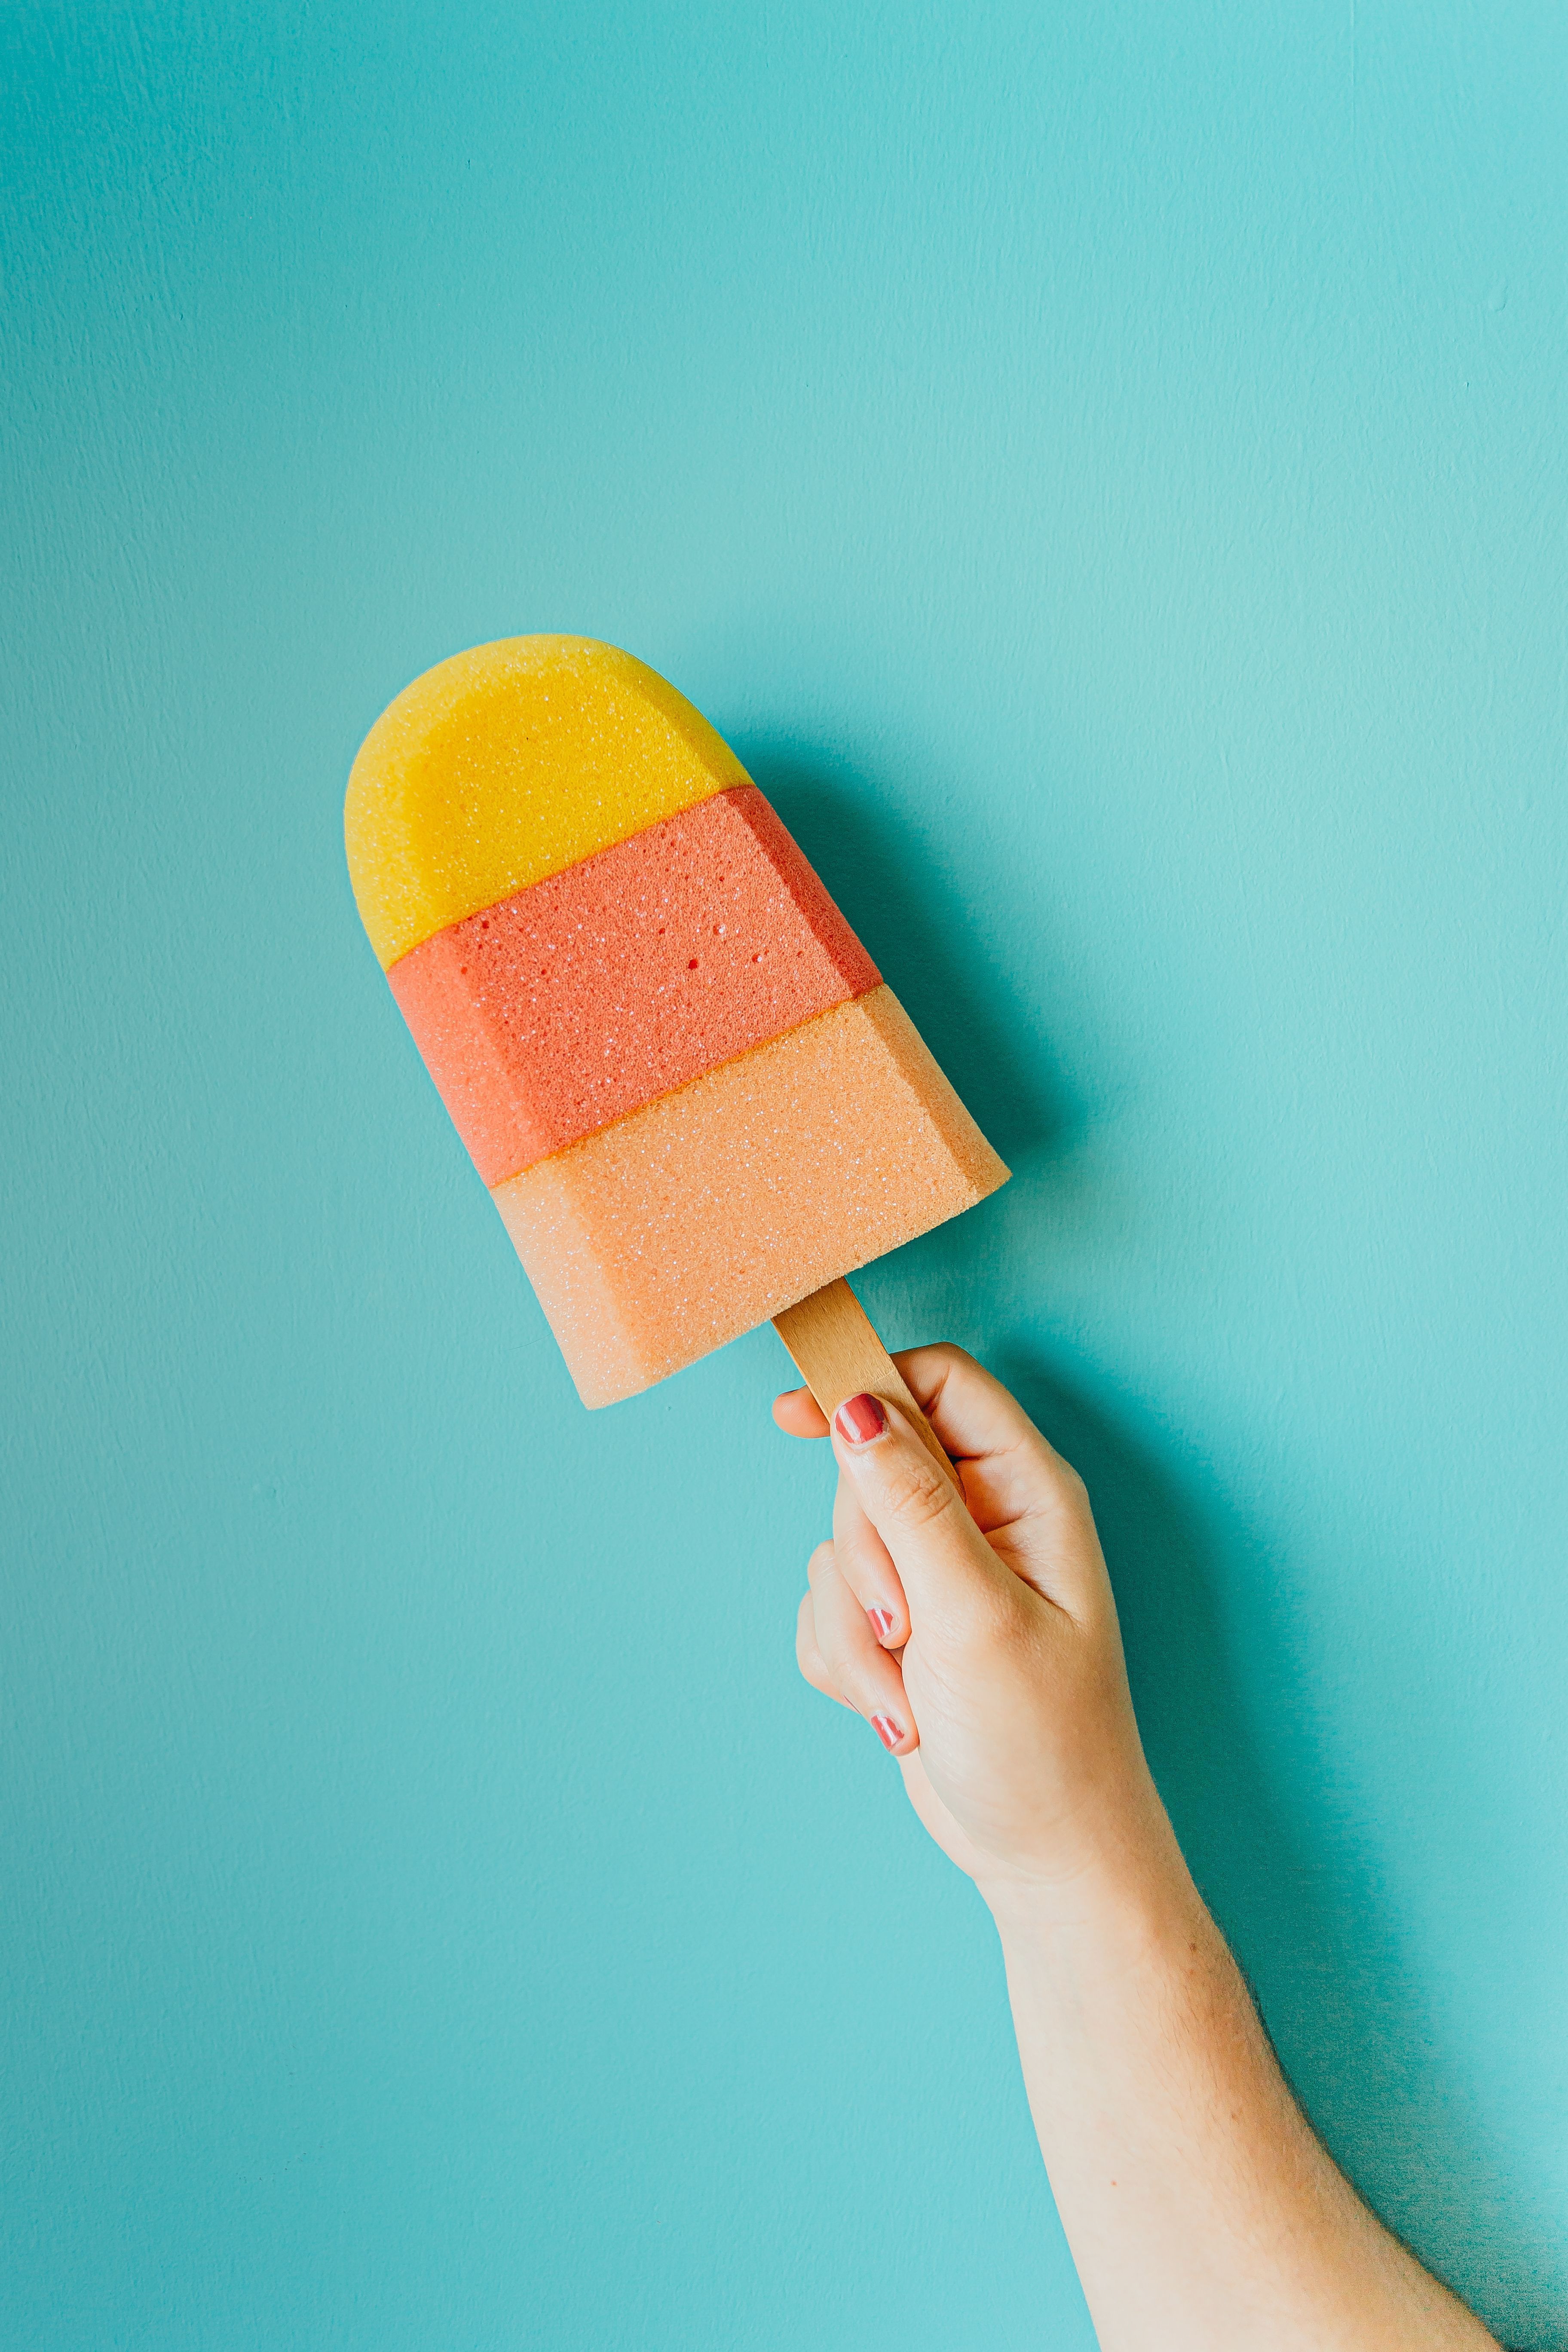 A person holding an ice cream cone - Cream, ice cream